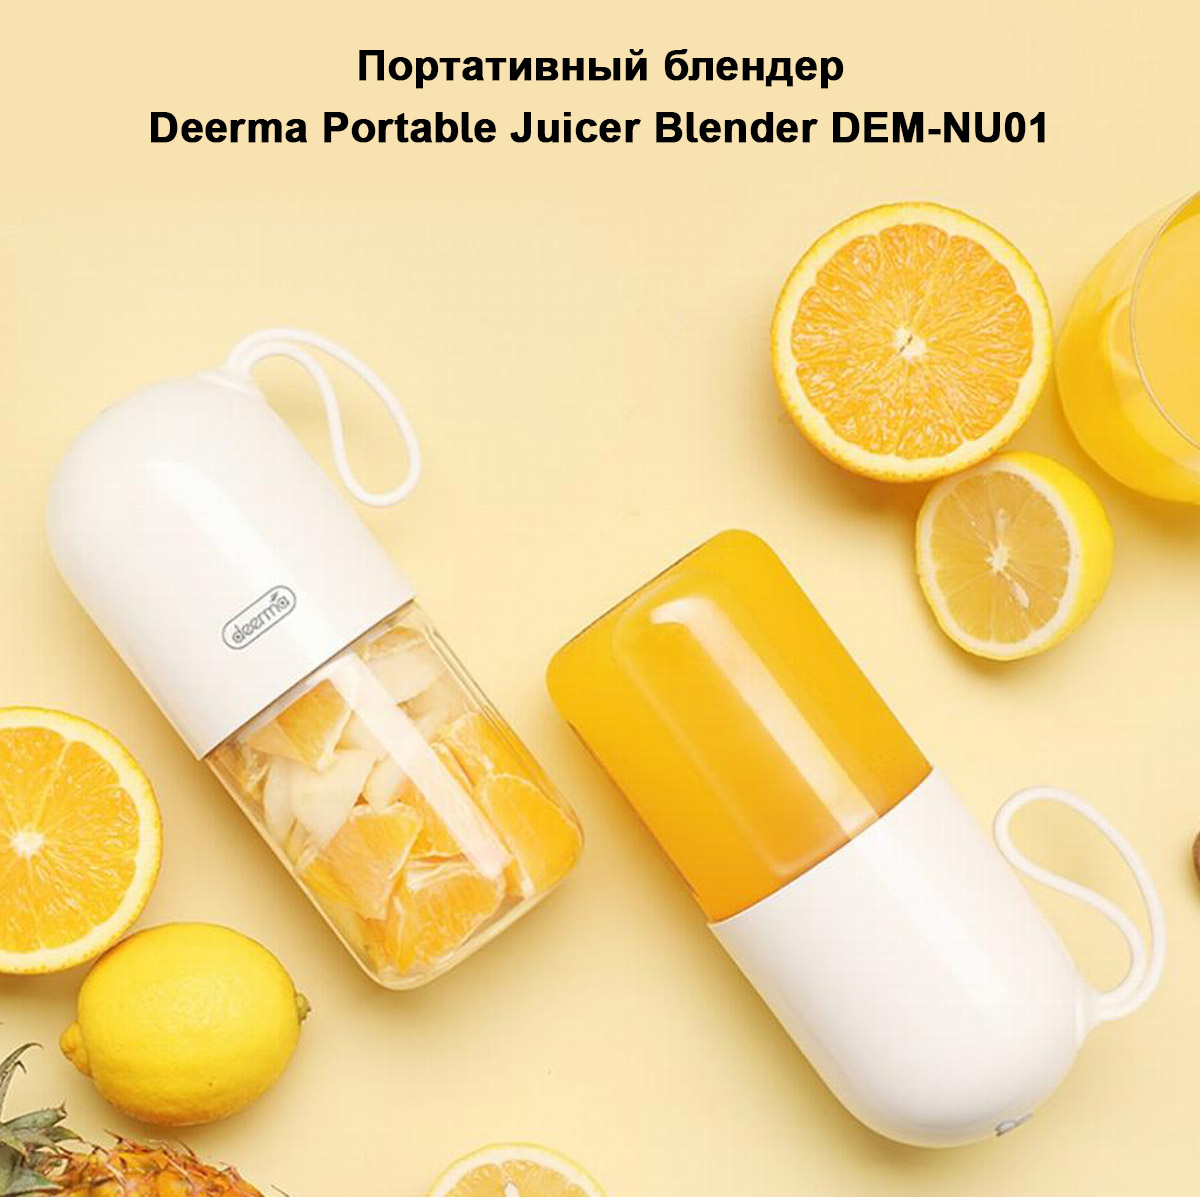 Портативный блендер Deerma Portable Juicer Blender DEM-NU01